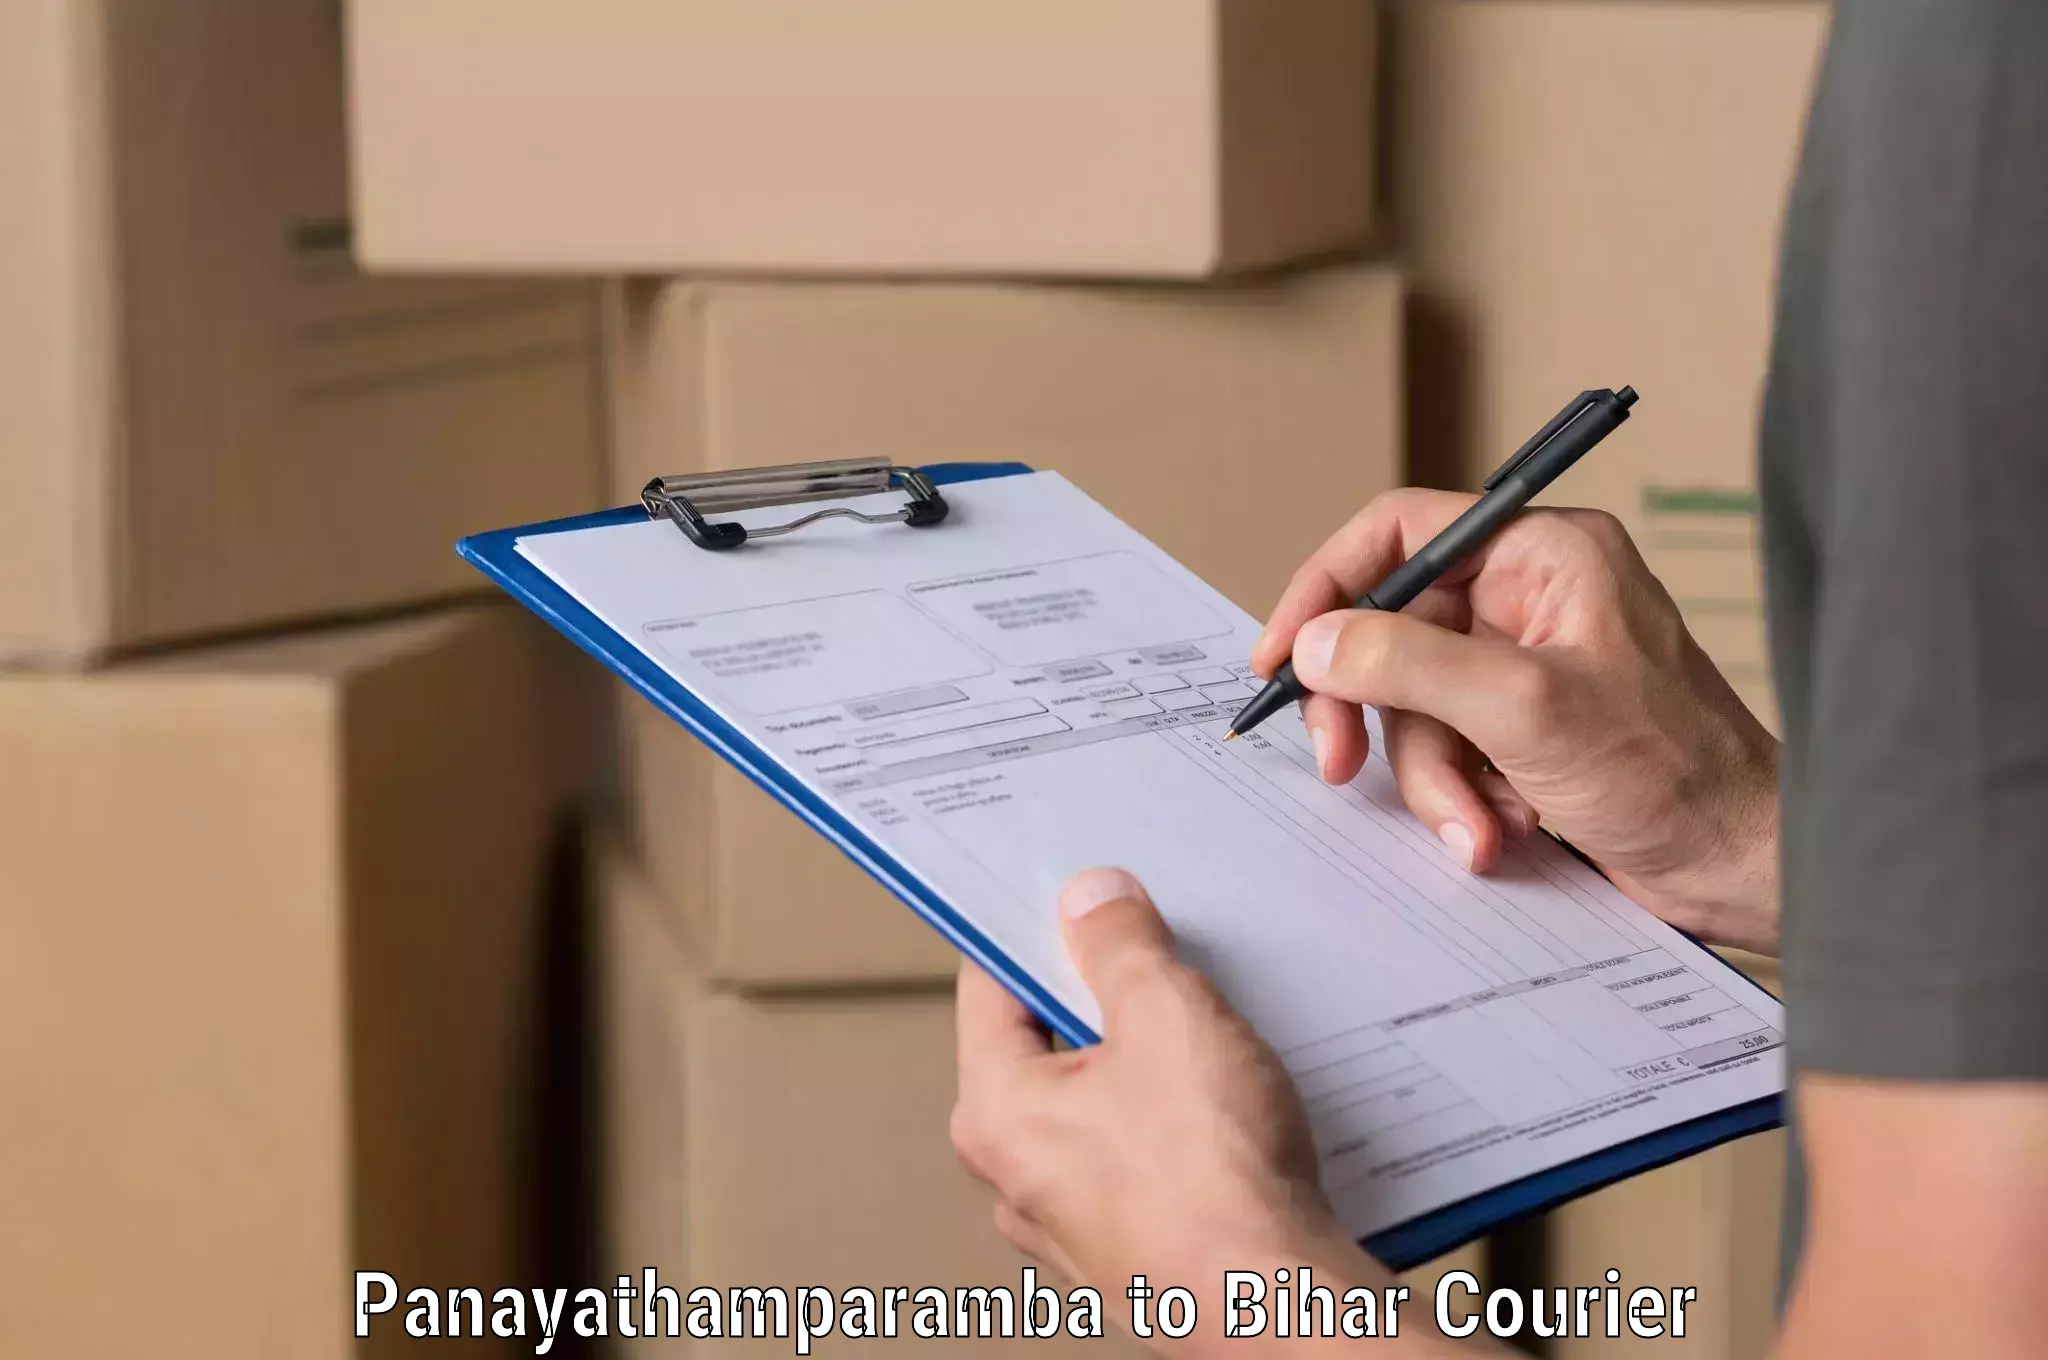 Express logistics service Panayathamparamba to Madhubani